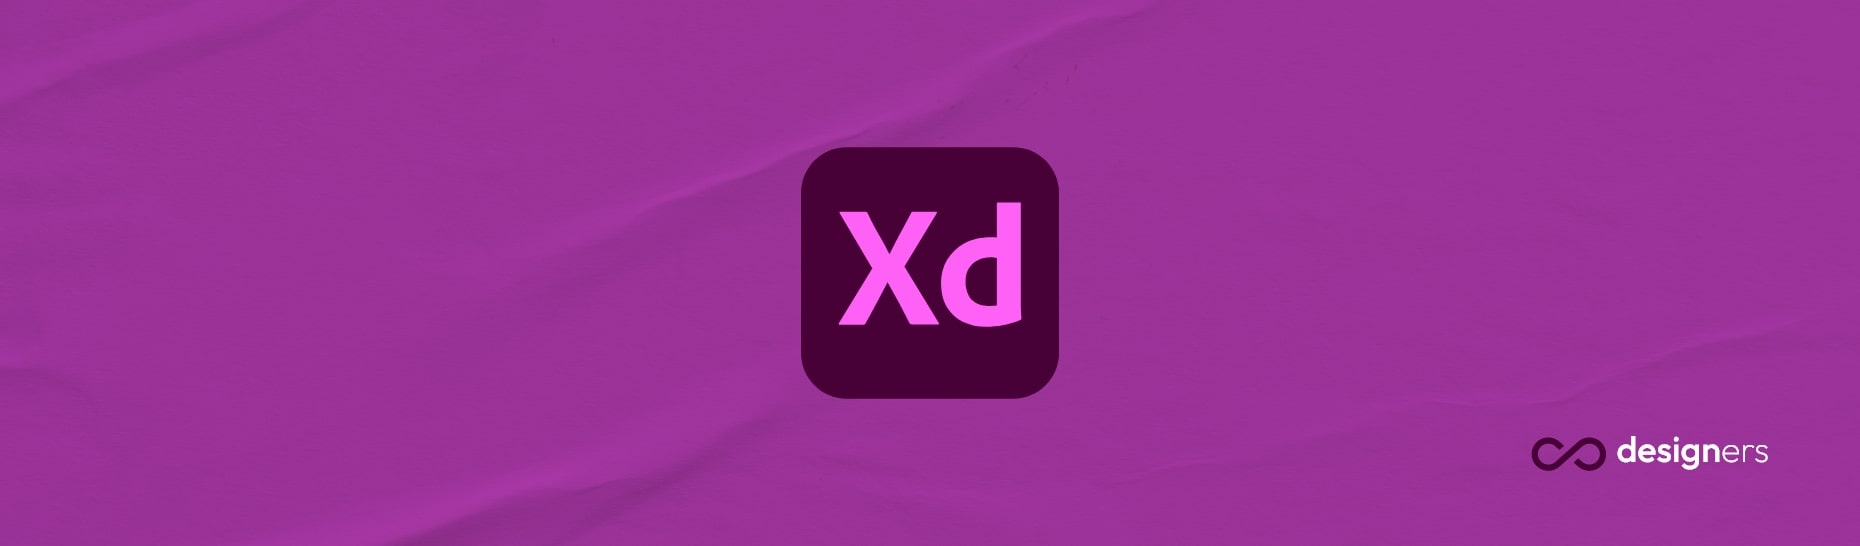 Is Adobe XD like Sketch?